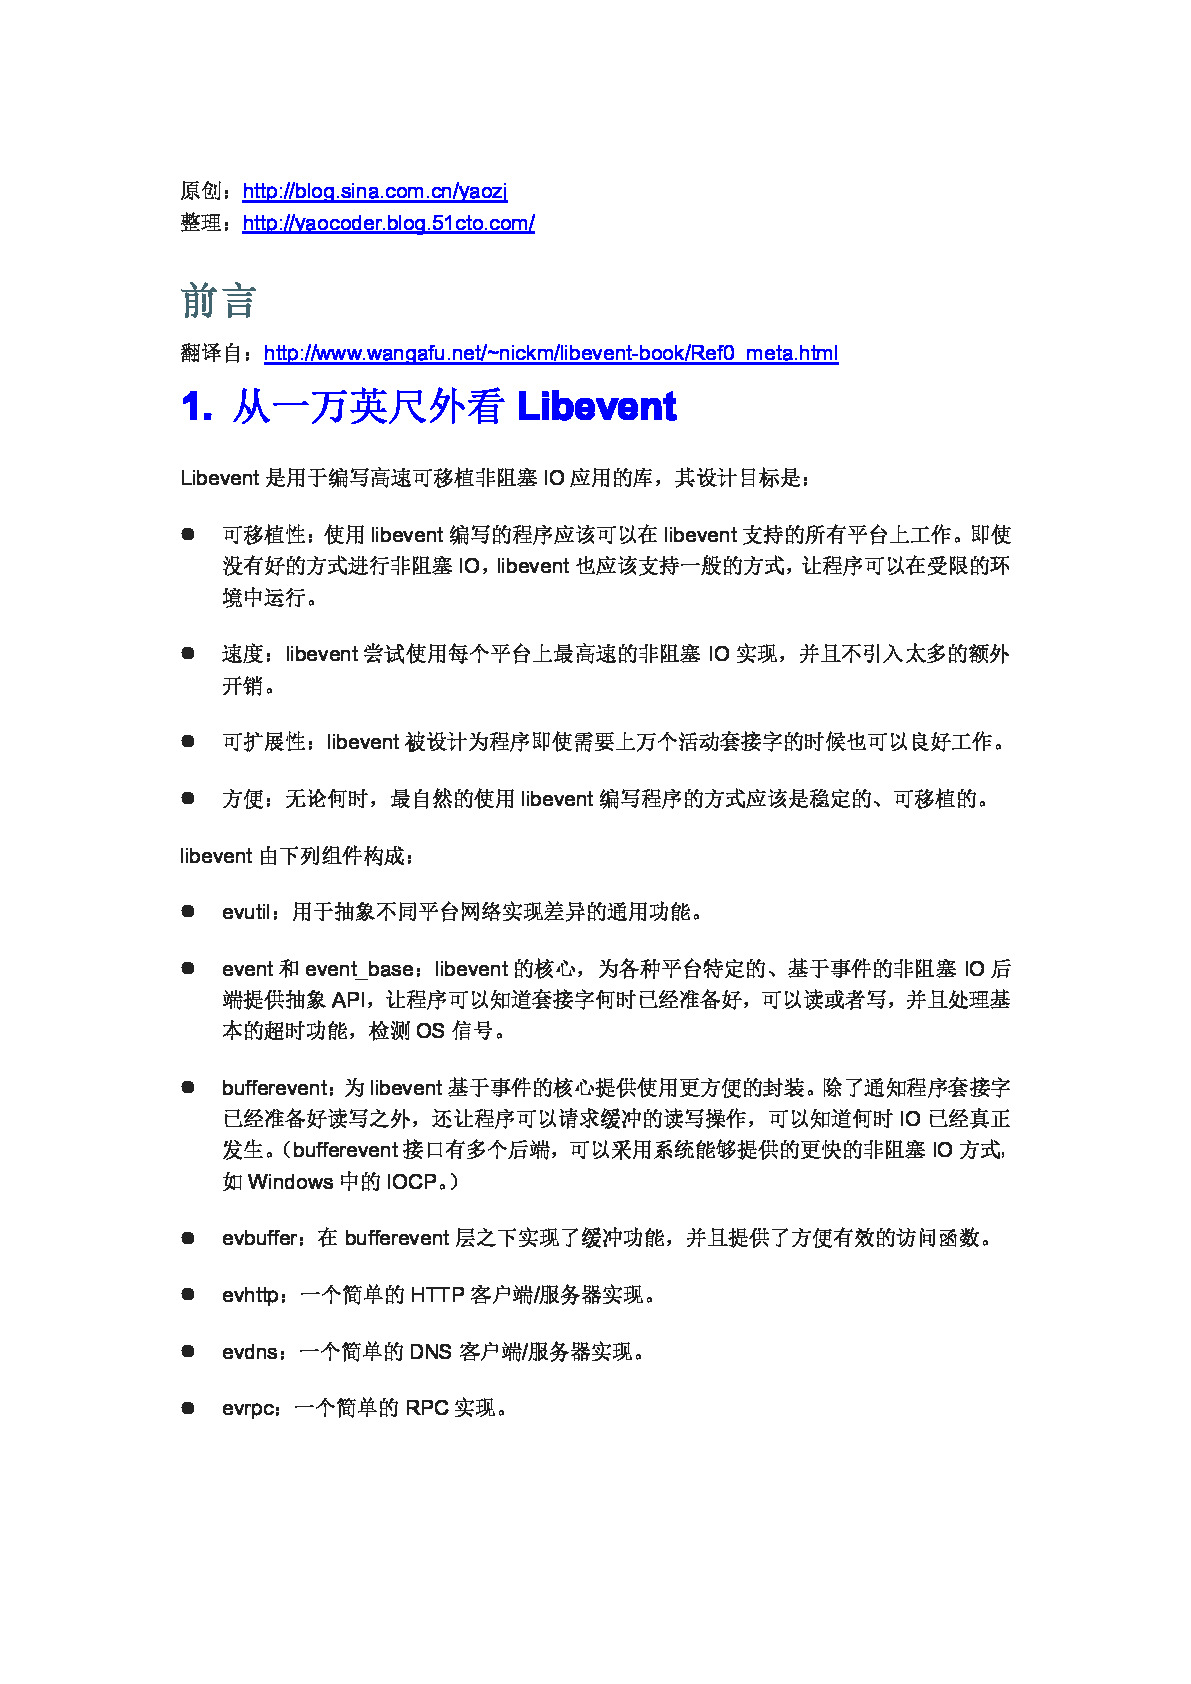 libevent参考手册(中文版)